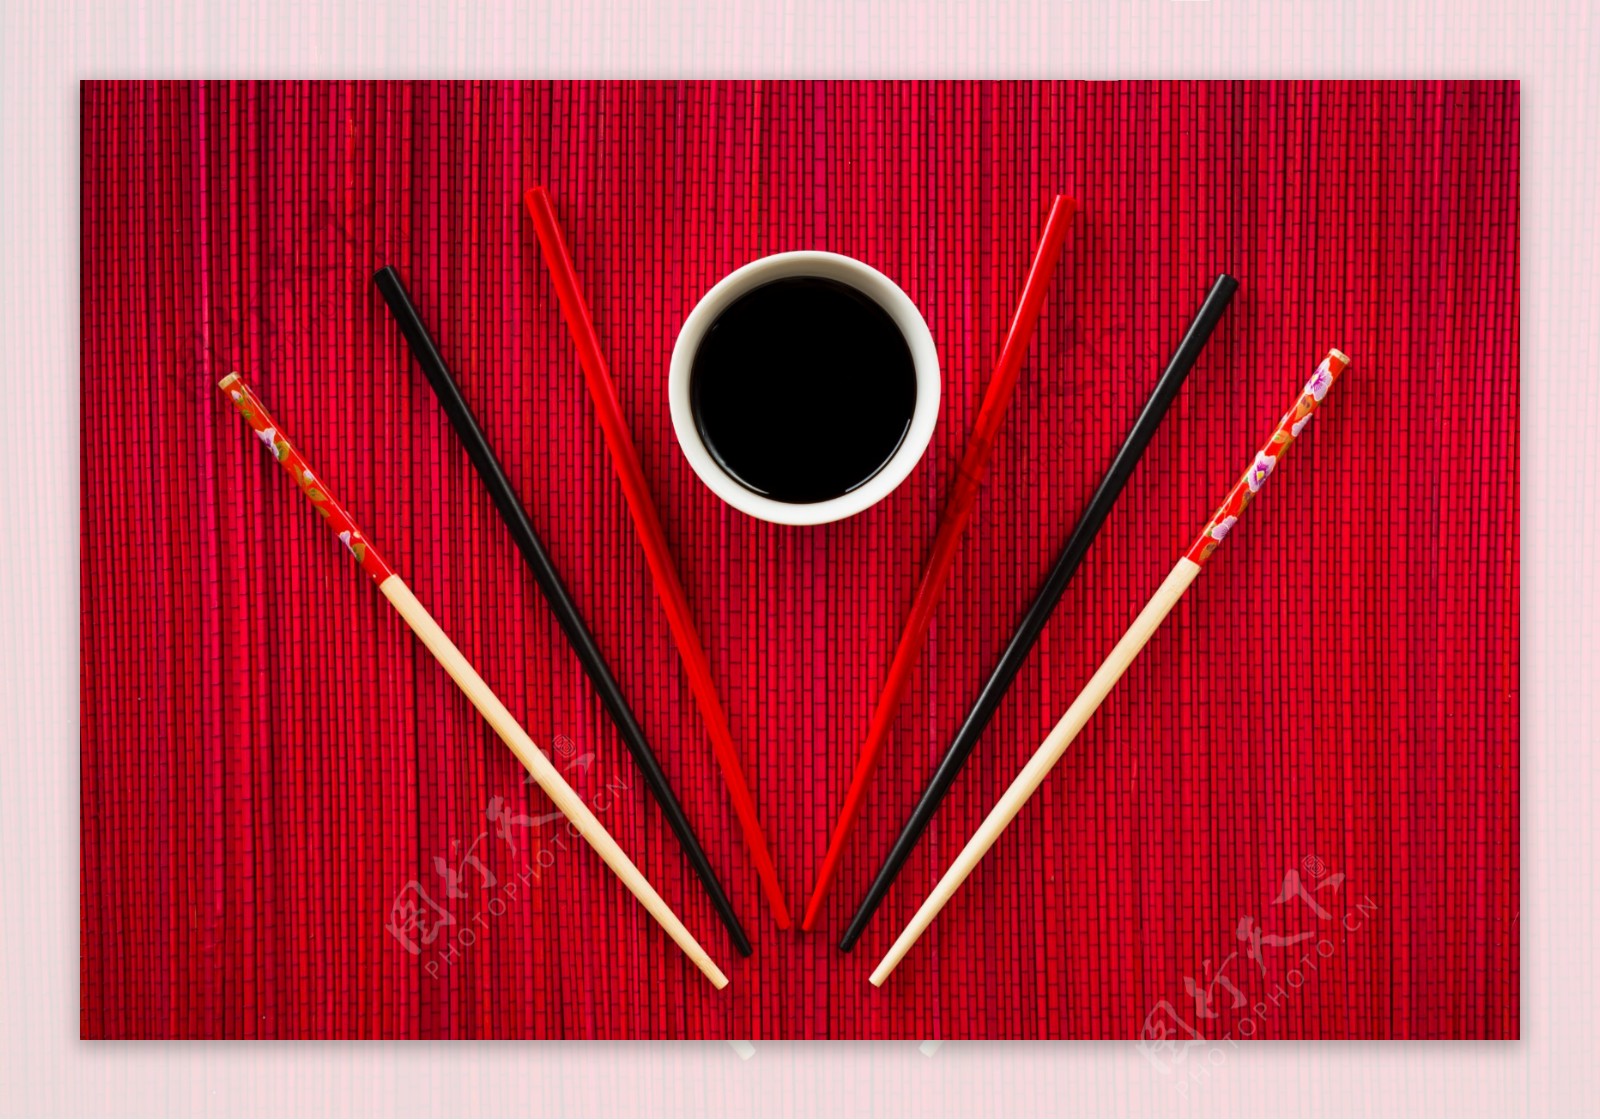 筷子与调味碟图片